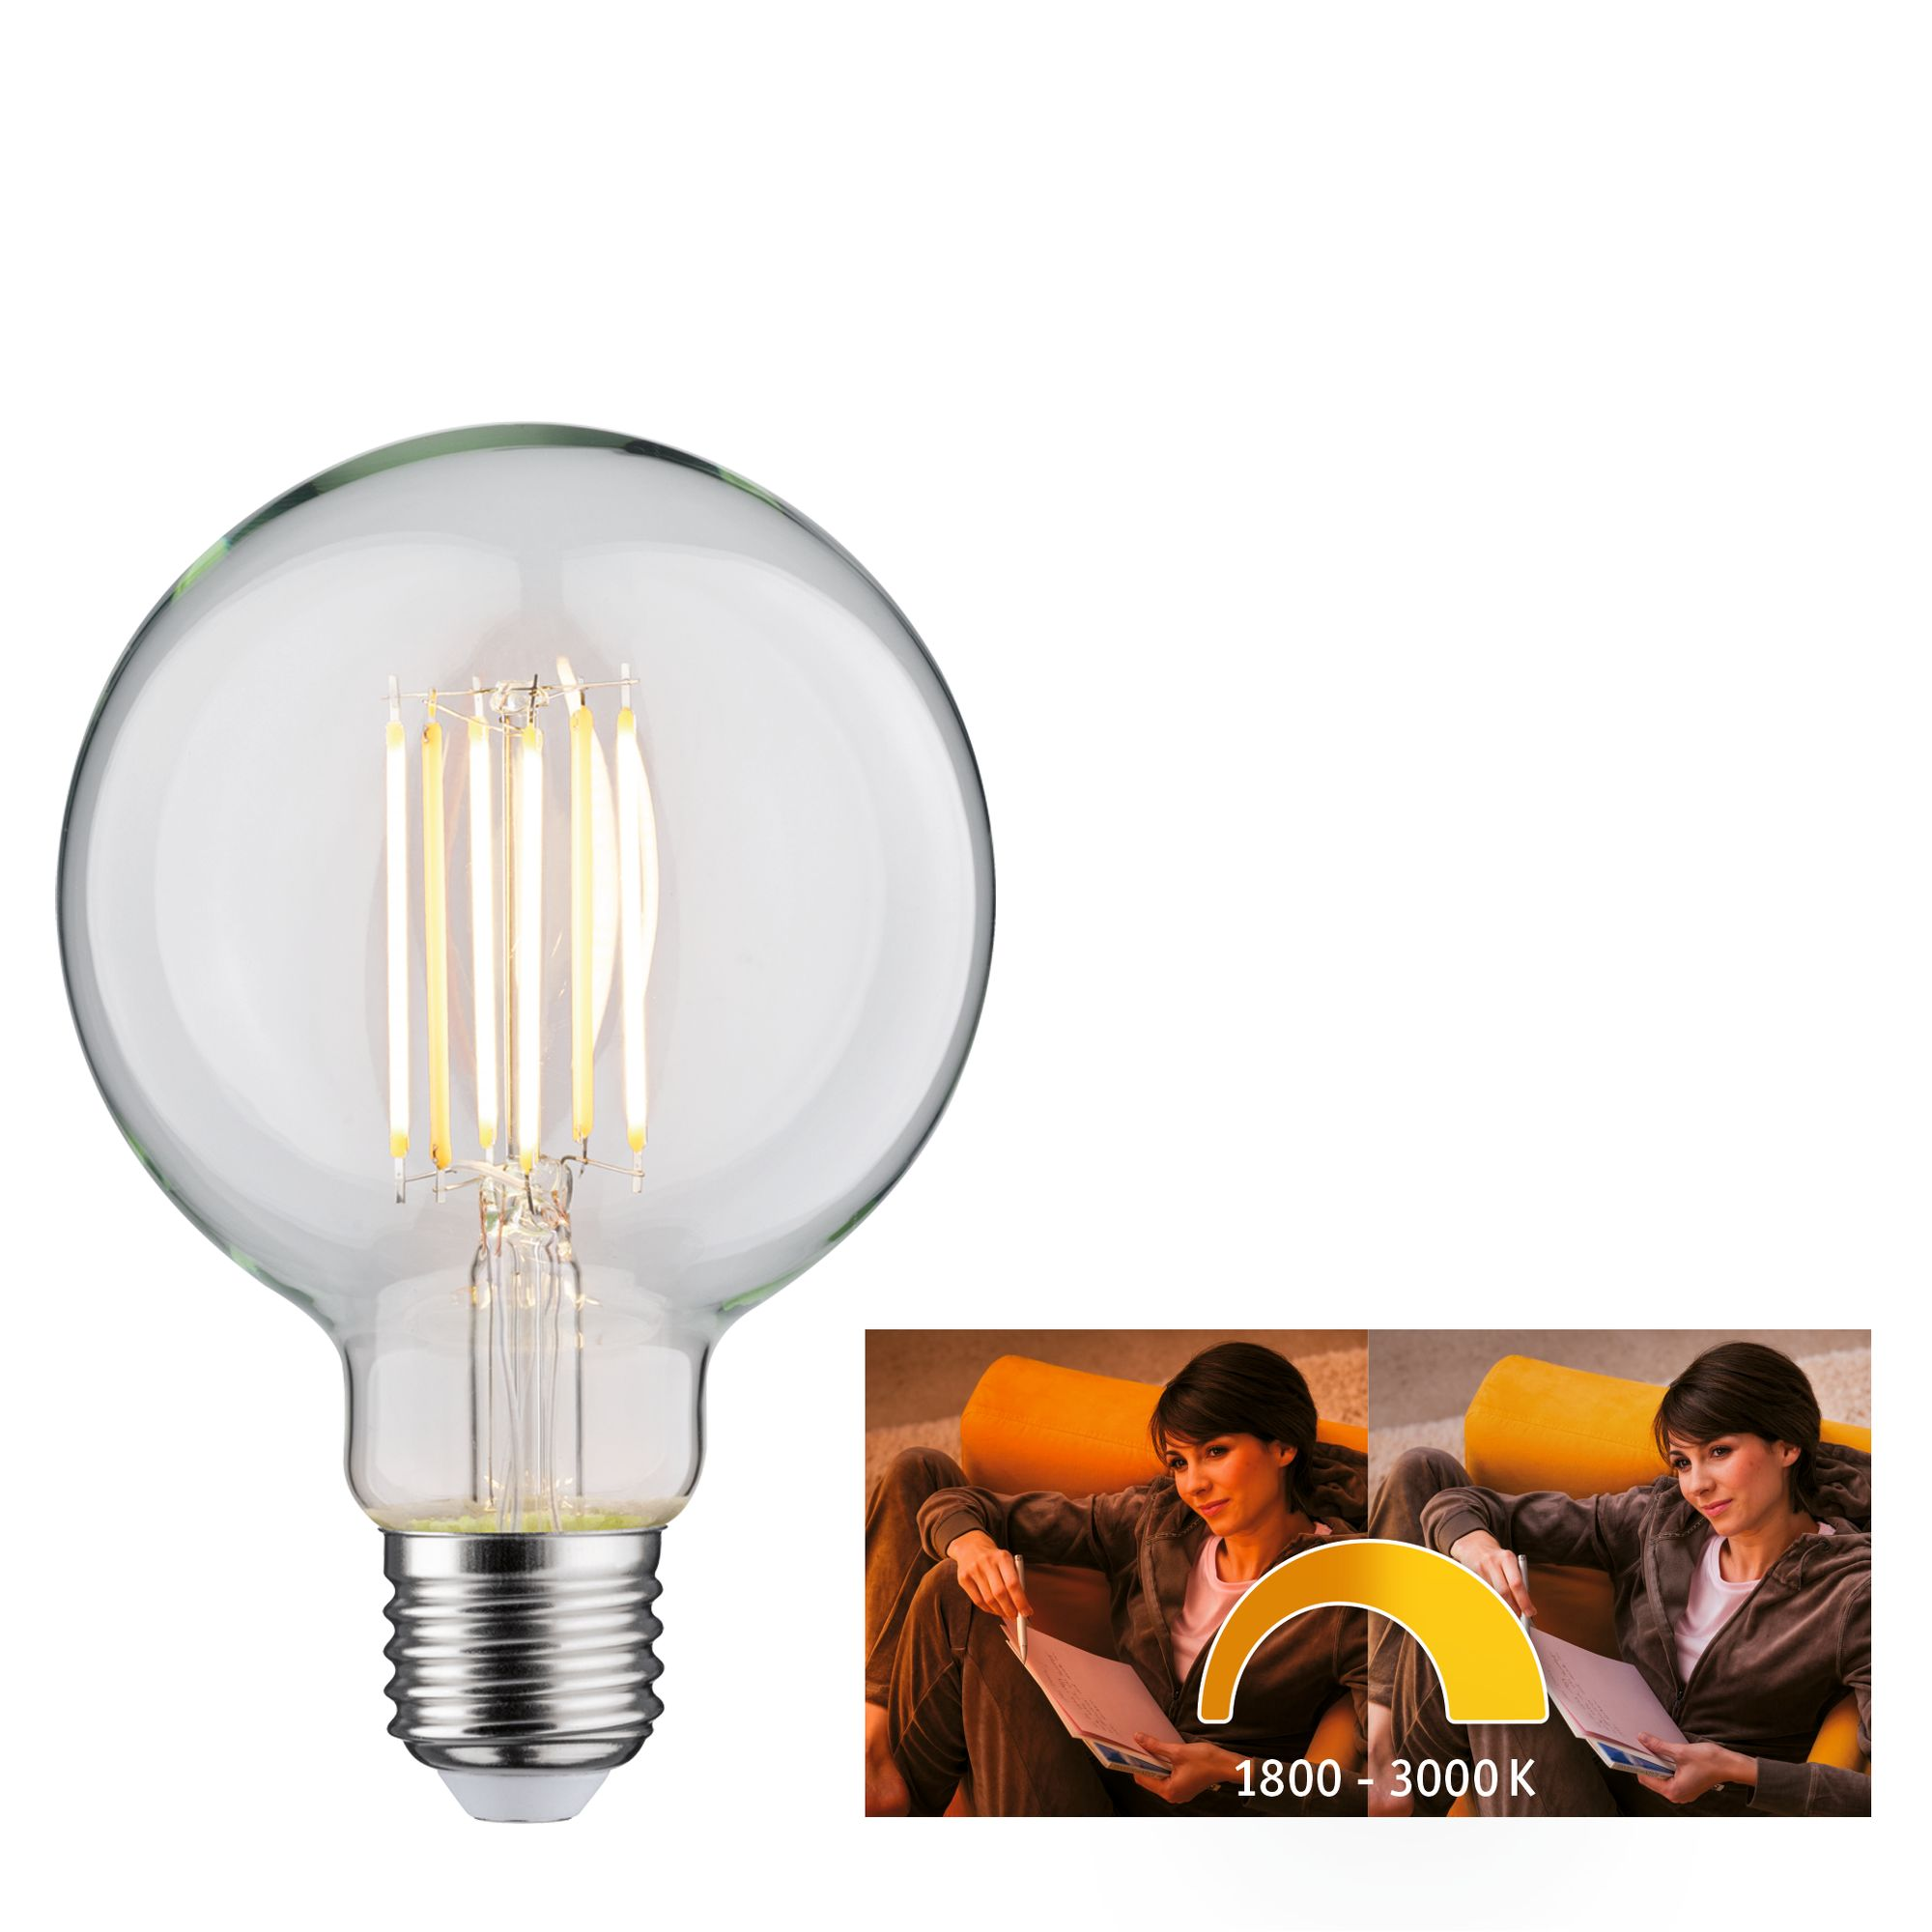 LED-Globelampe E27 7W (60W) 806 lm goldlicht/warmweiß klar + product picture